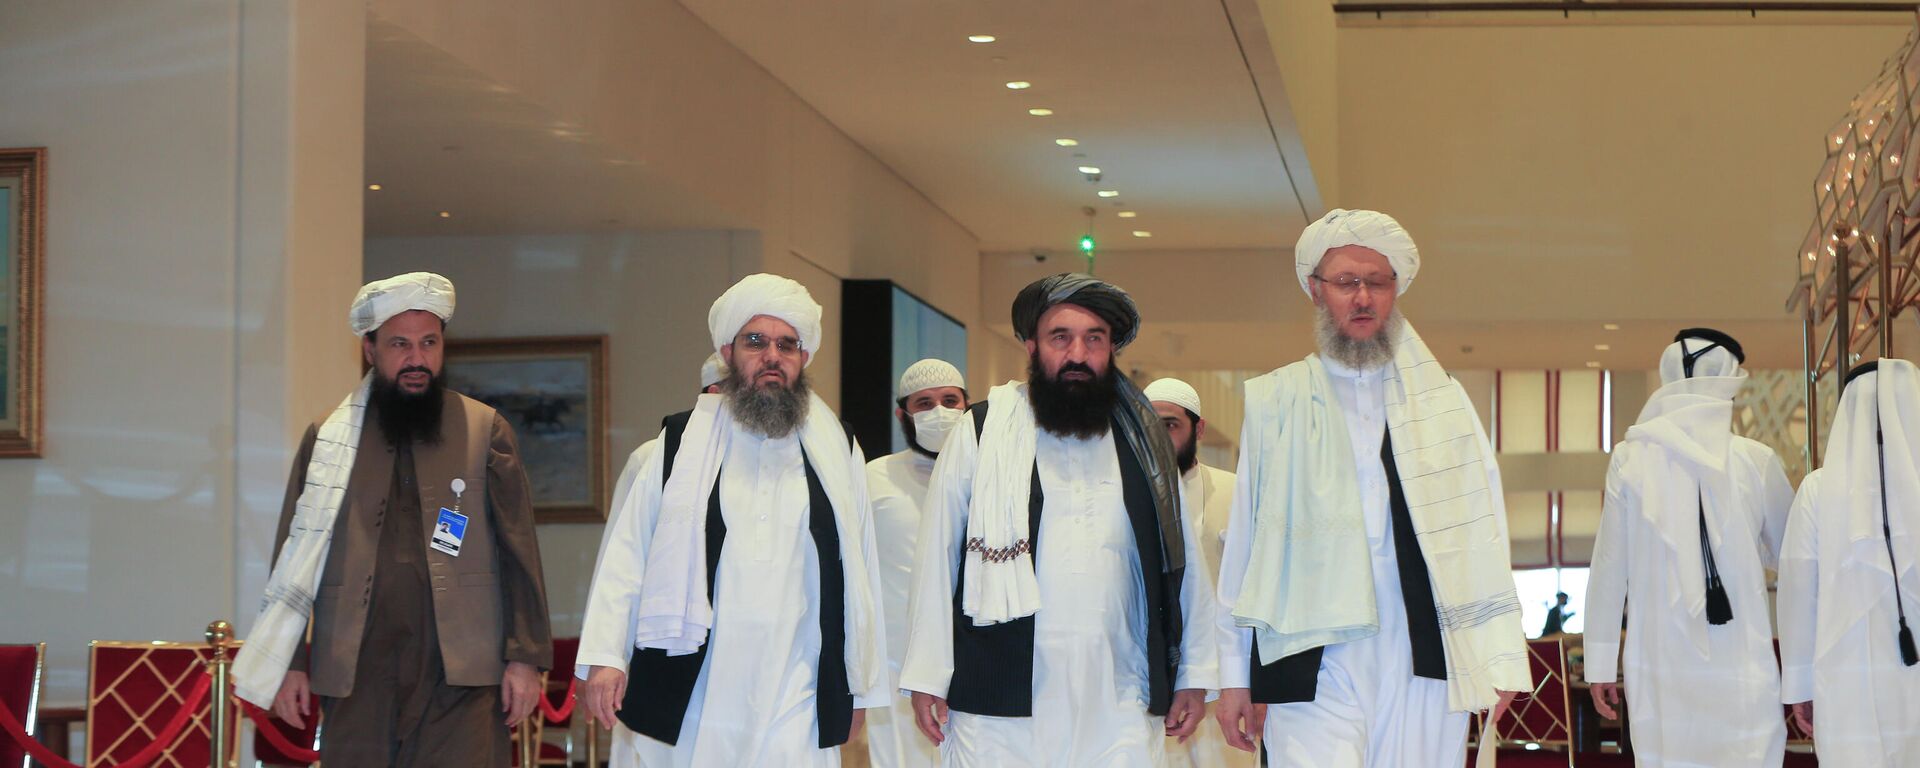 Una delegación de los talibanes - Sputnik Mundo, 1920, 17.12.2021